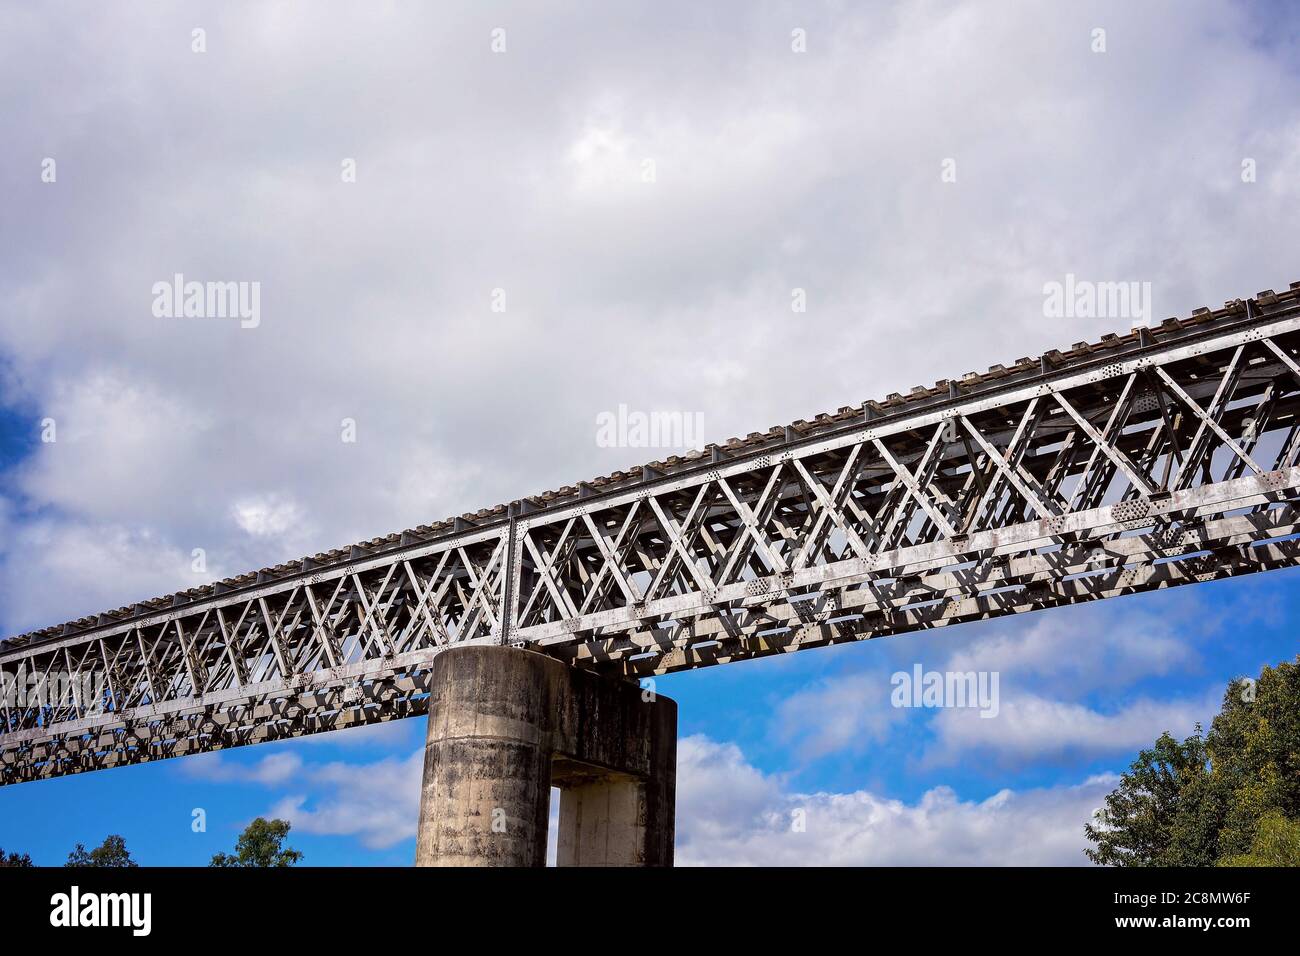 Eine Eisenbahnbrücke aus Beton und Stahl gegen einen wolkigen blauen Himmel Stockfoto